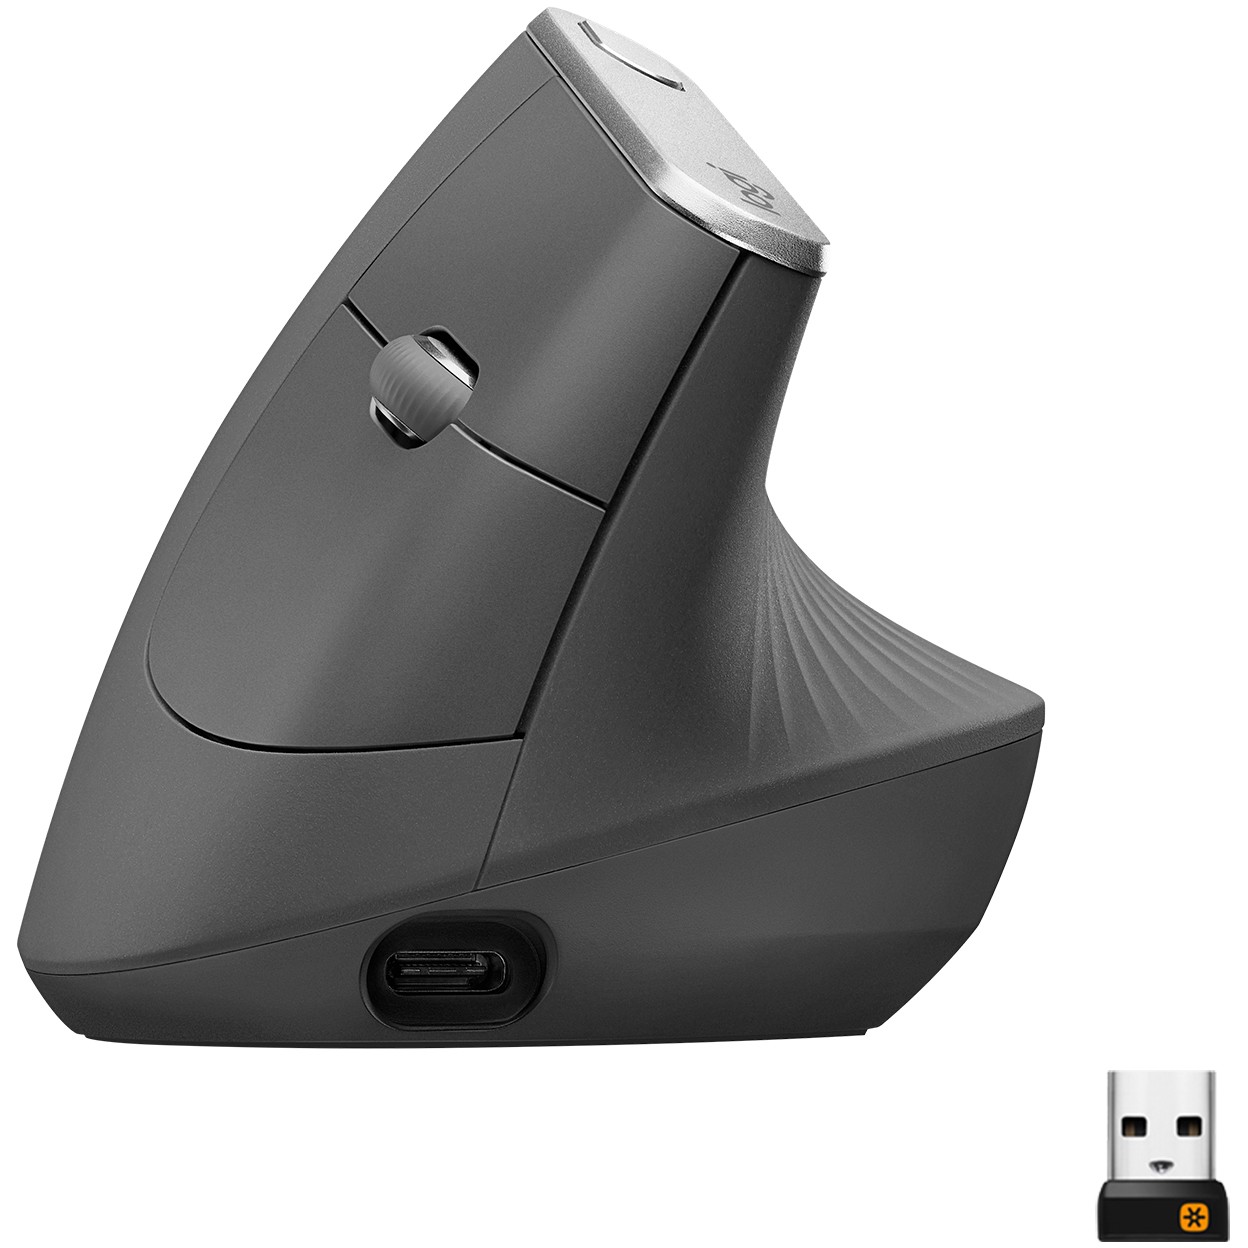 Logitech MX Vertical mouse - 910-005448